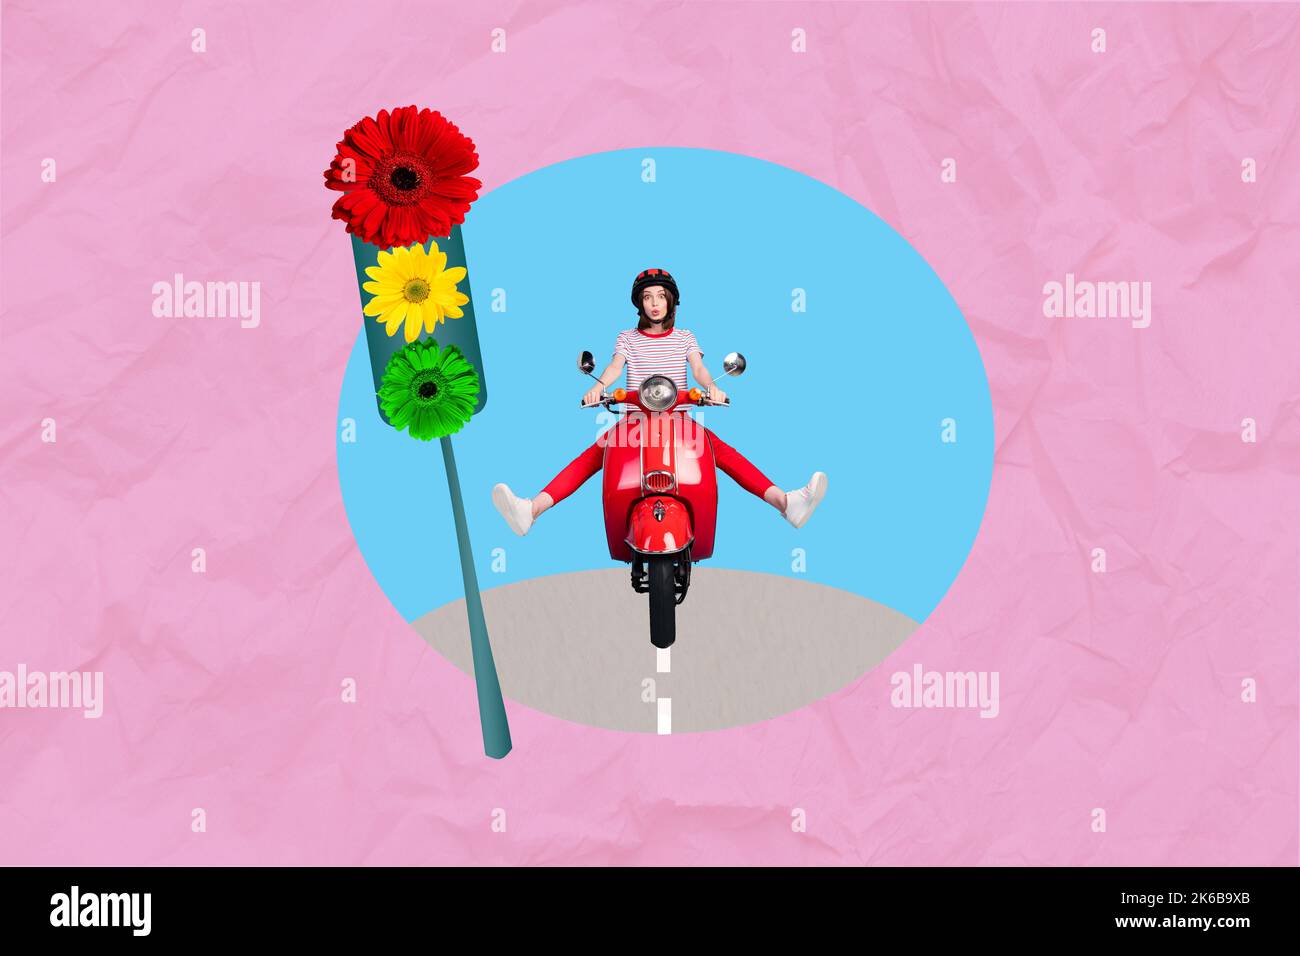 Photo créative 3D collage art poster carte postale de la jolie personne heureuse fille Moving moto centre ville isolée sur fond de dessin Banque D'Images